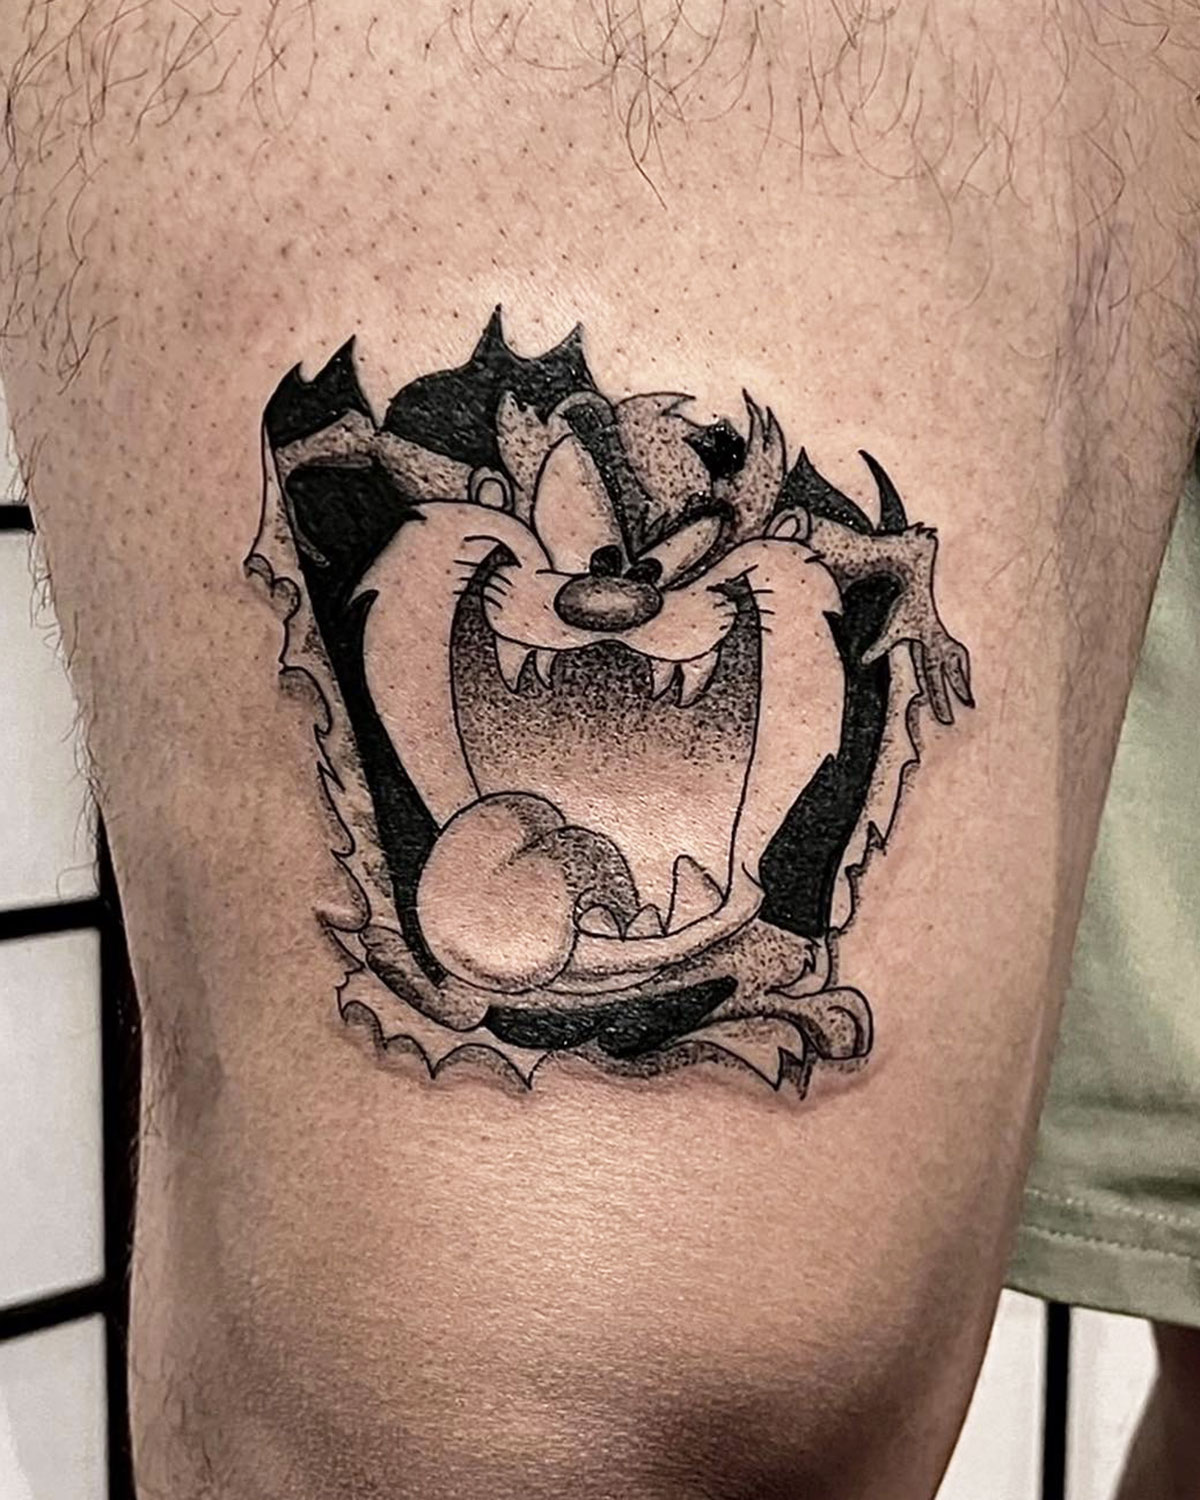 Tasmanian Devil - Tattoo Abyss Montreal